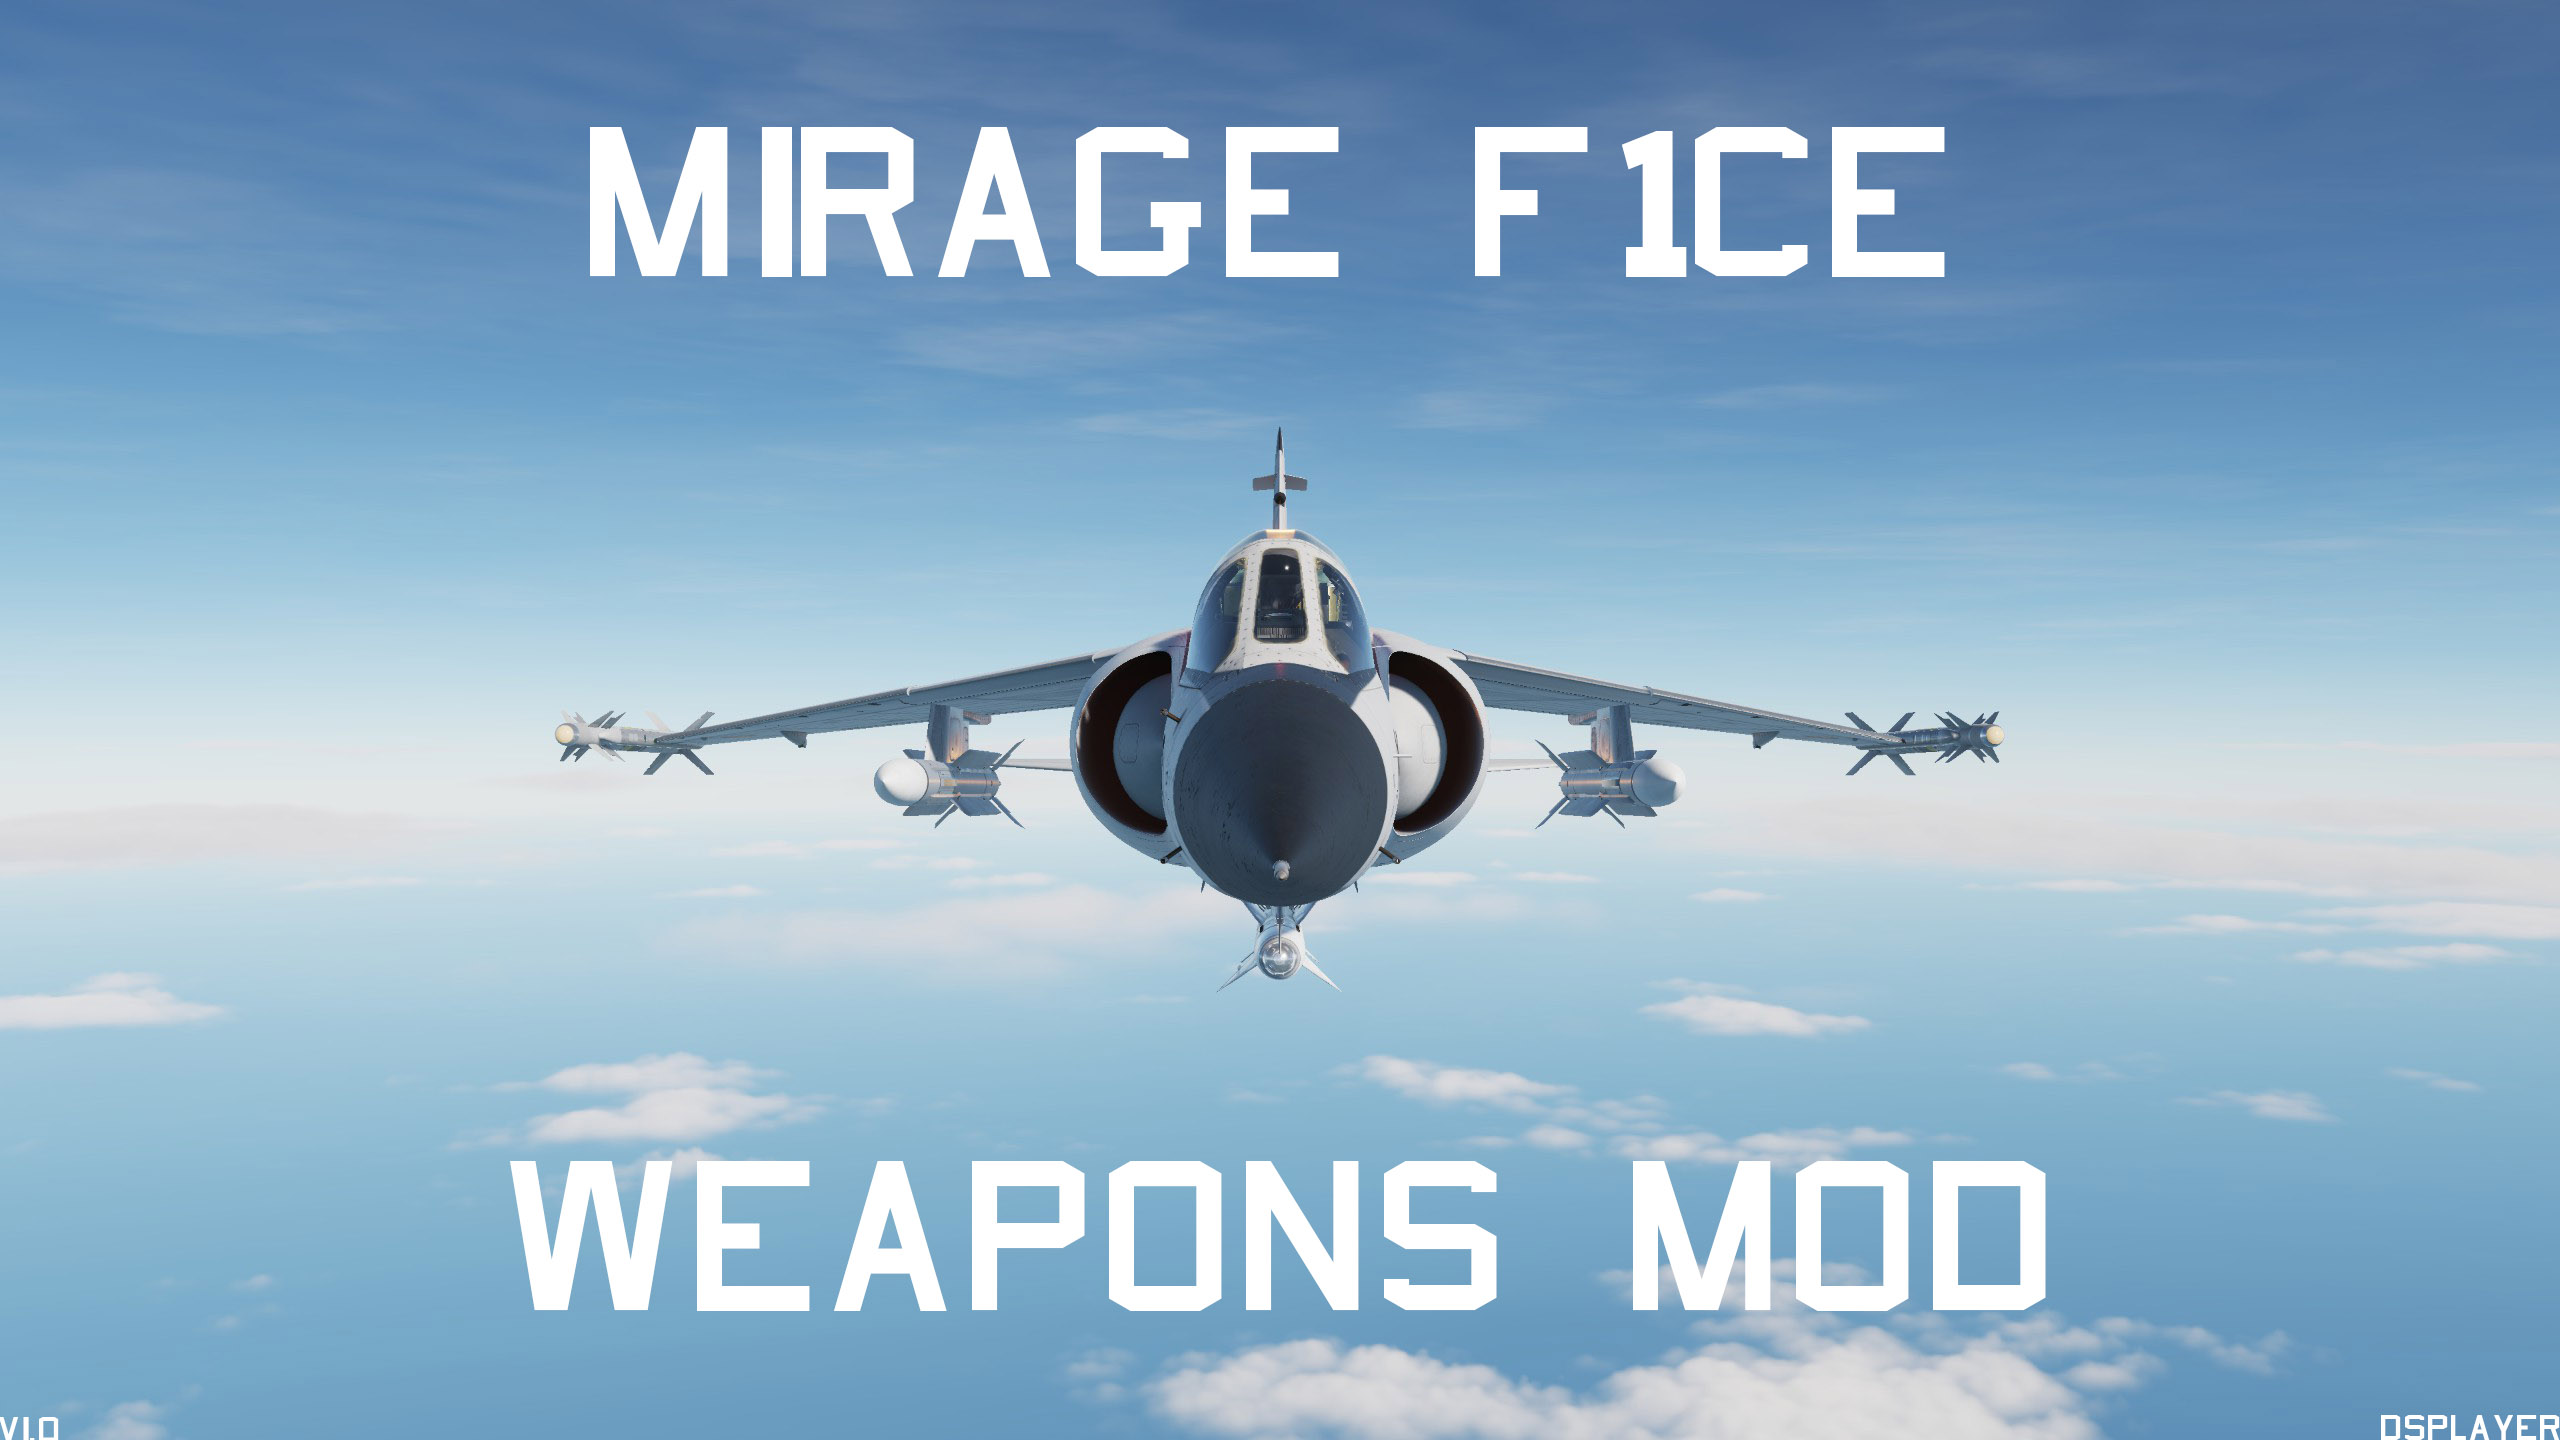 MirageF1CEWeaponsMOd.jpg